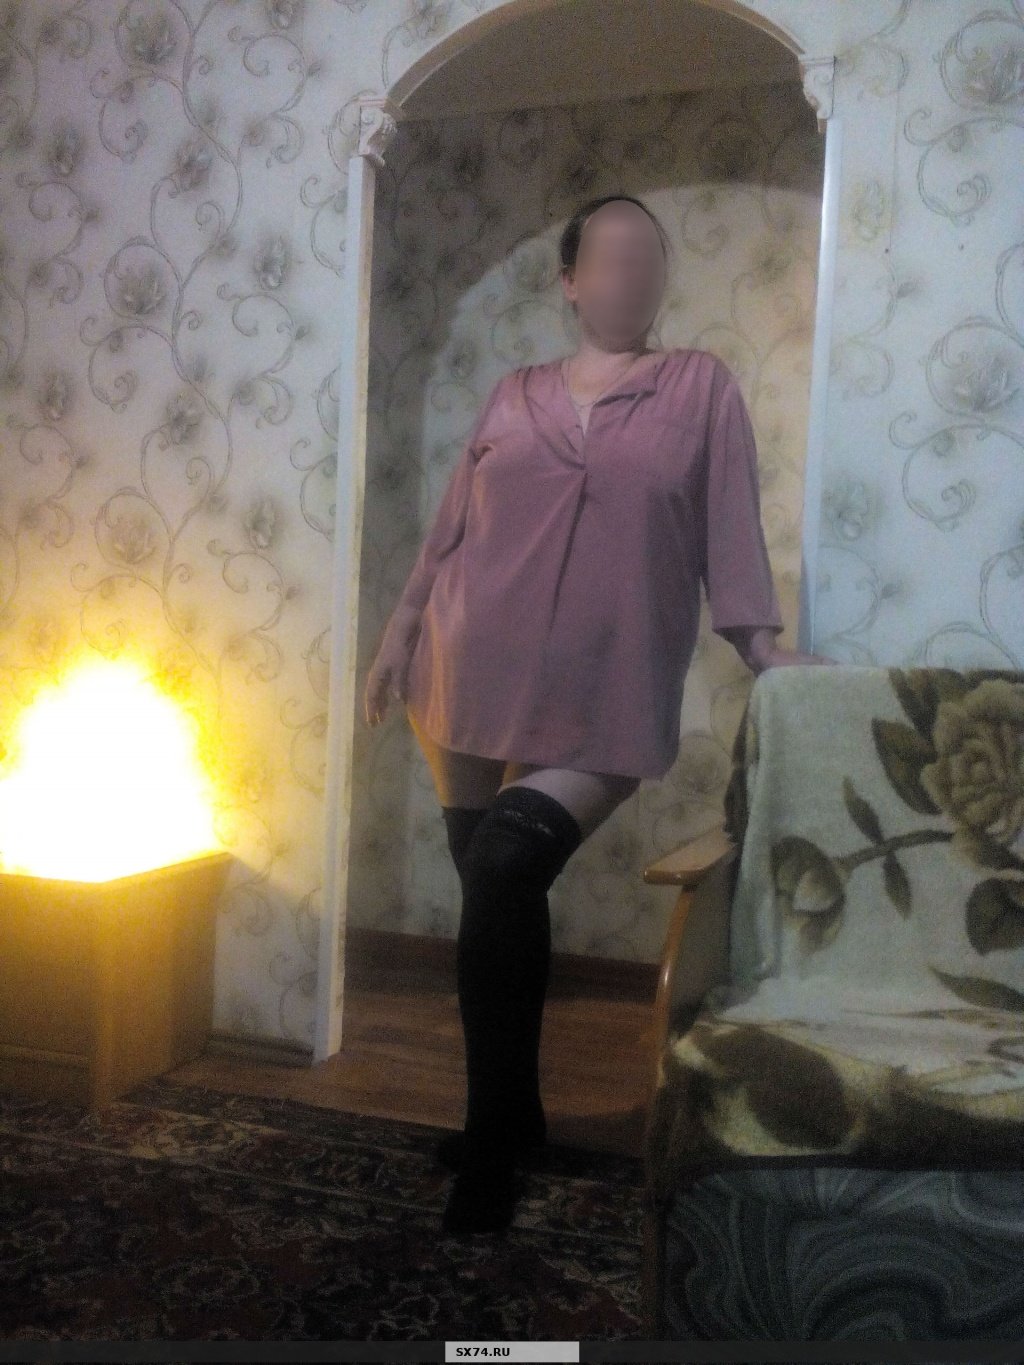 Яночка: проститутки индивидуалки в Челябинске